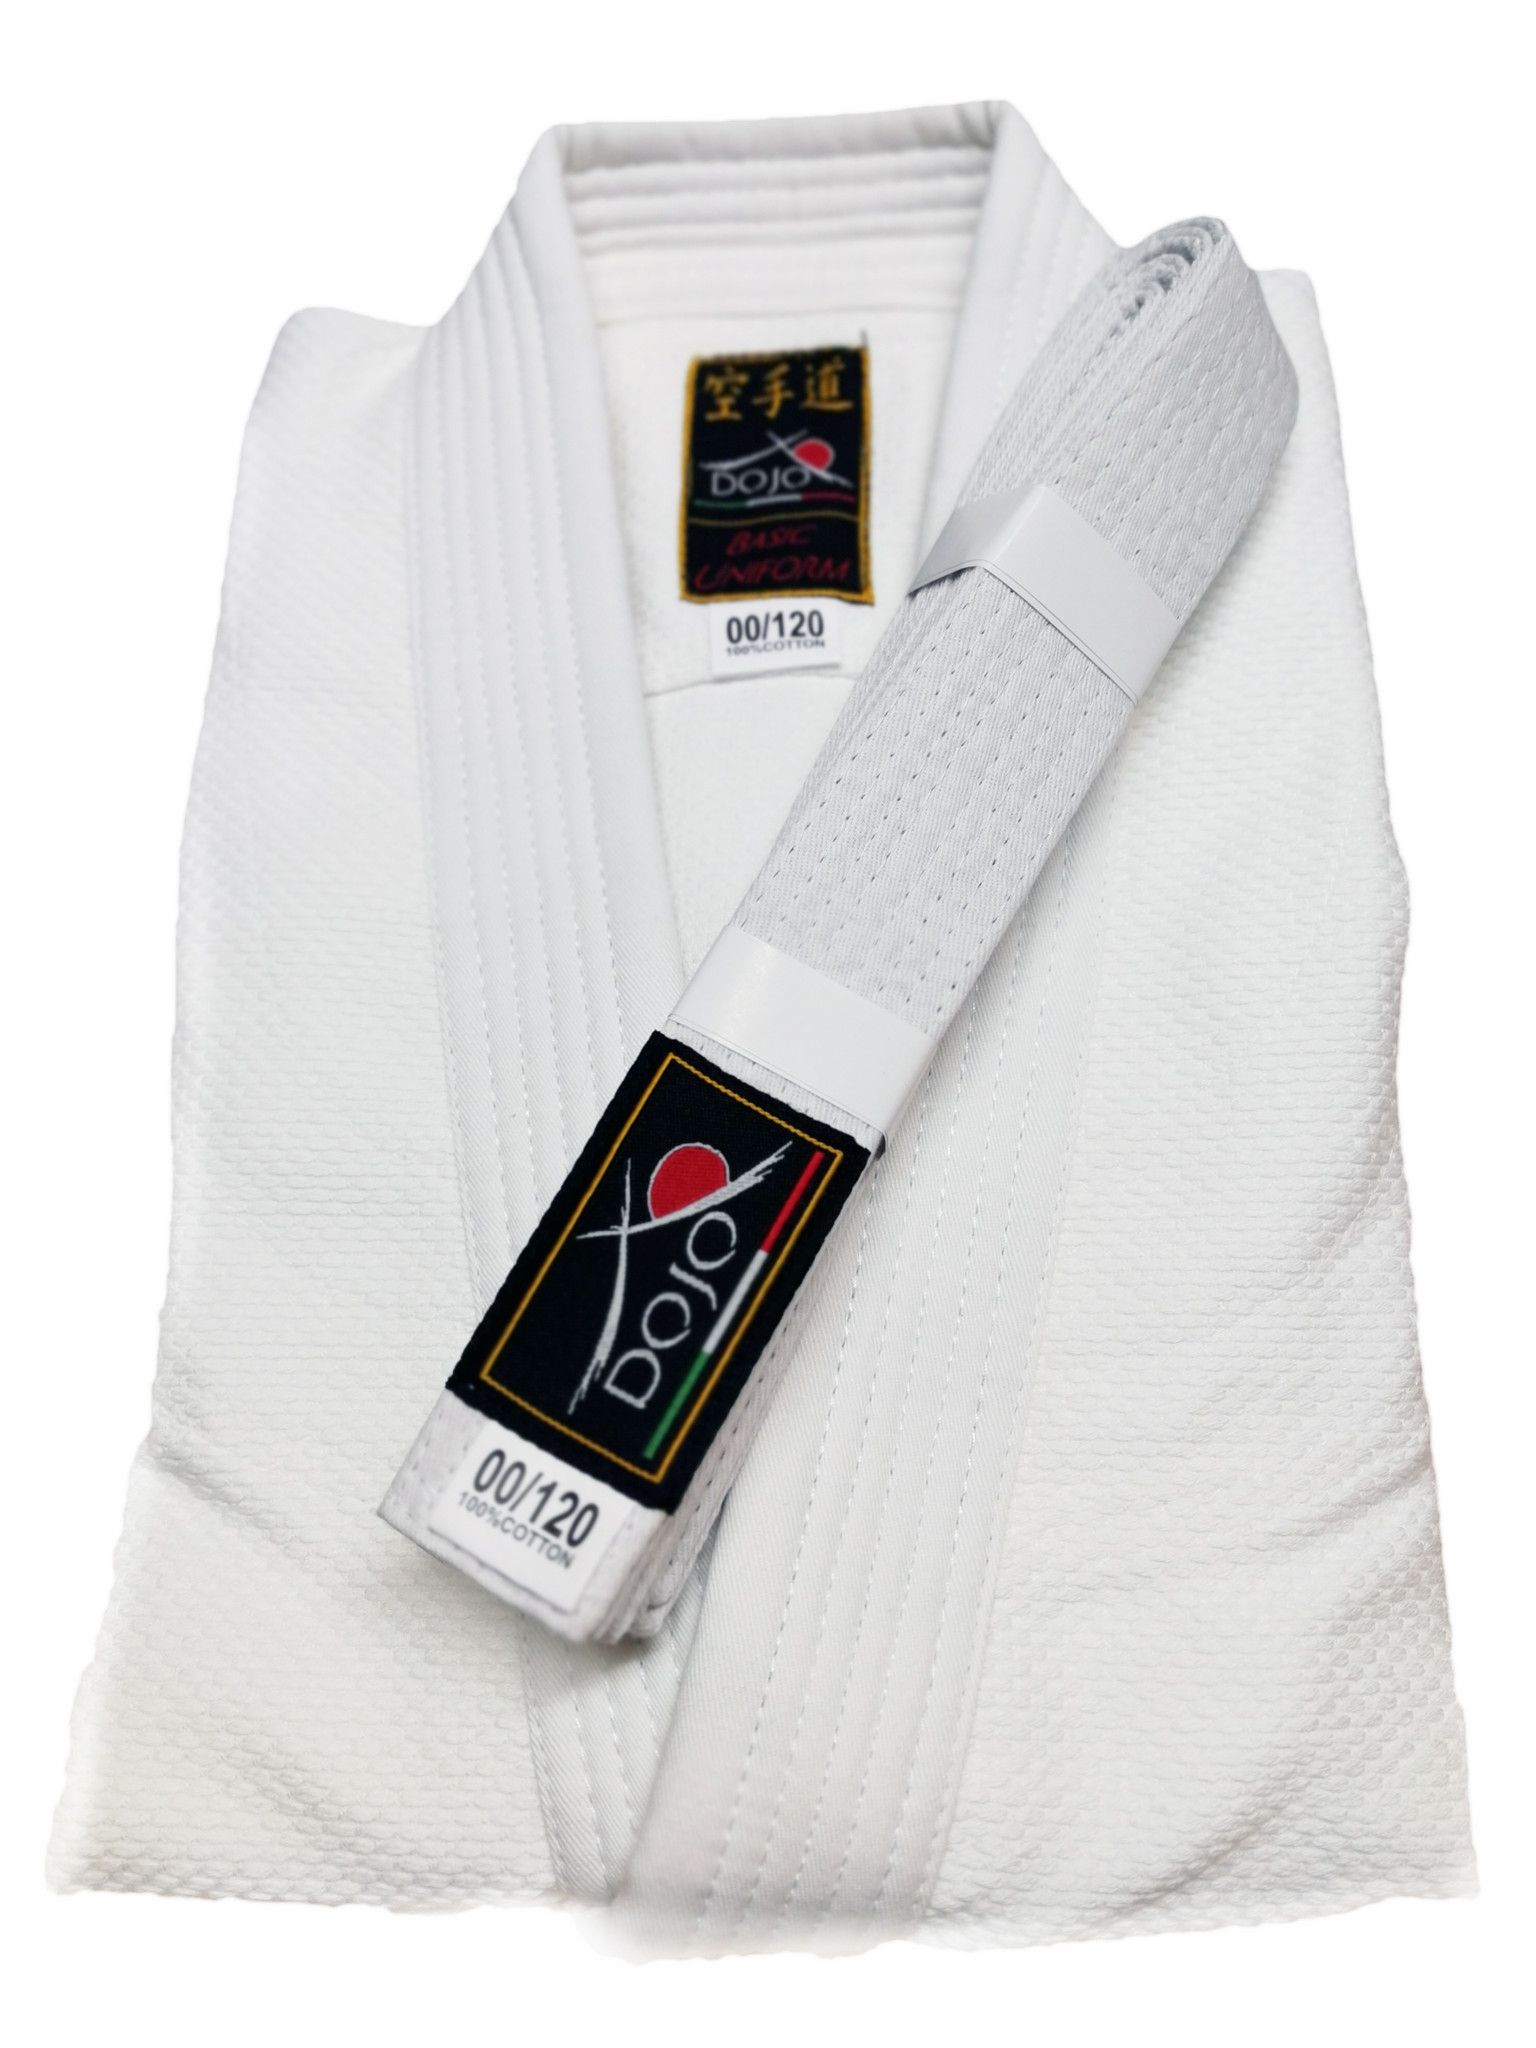 Judogi Dojo Training per allenamento uniforme per Judo adatto a bambini o adulti